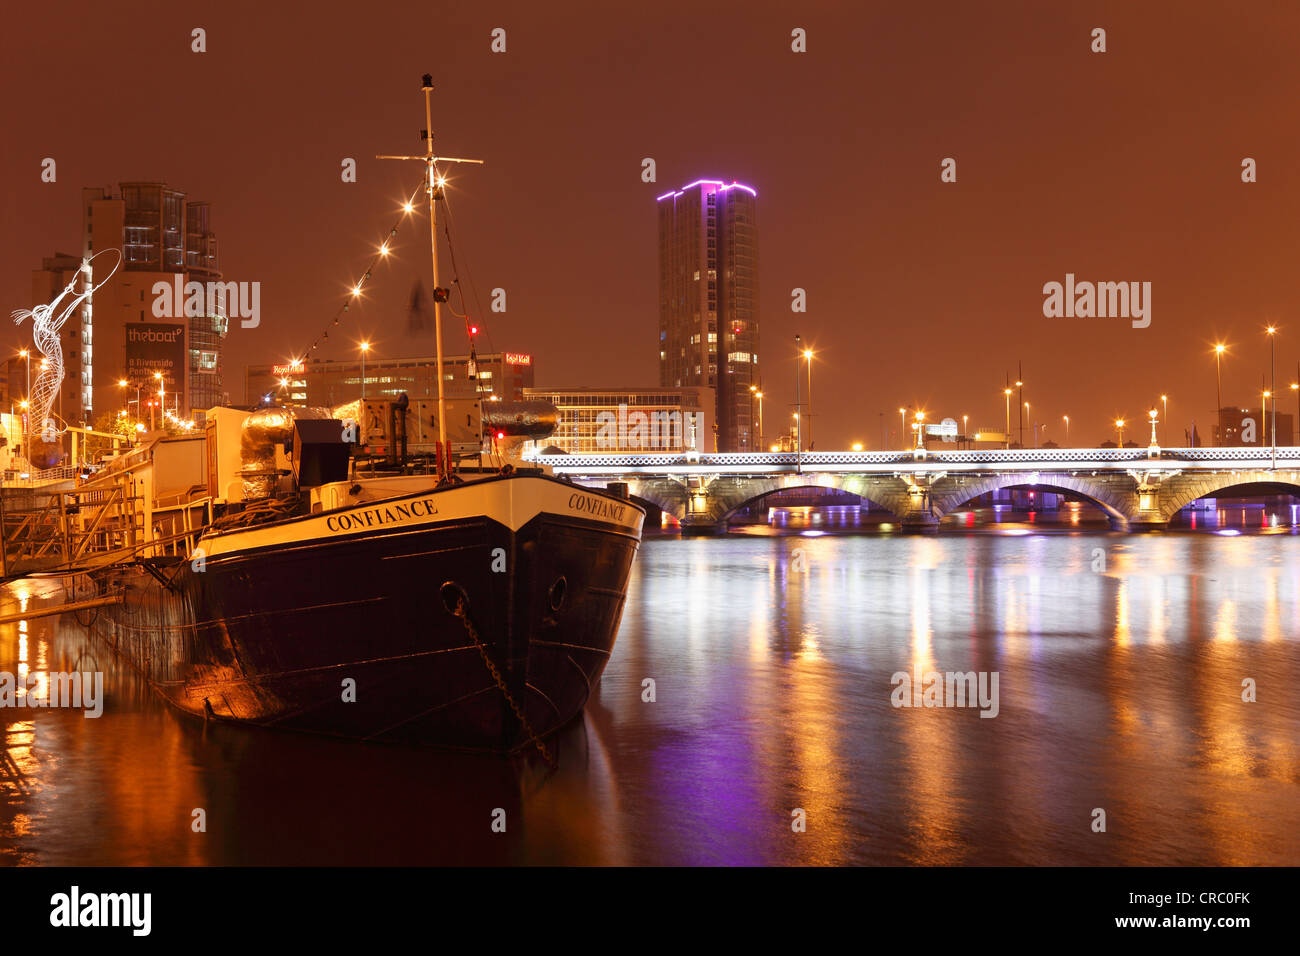 Confiance, Restaurant, Schiff, Königin der Brücke über den Fluss Lagan, Obel Turm hinten, Vereinigtes Königreich, Europa, PublicGround Stockfoto